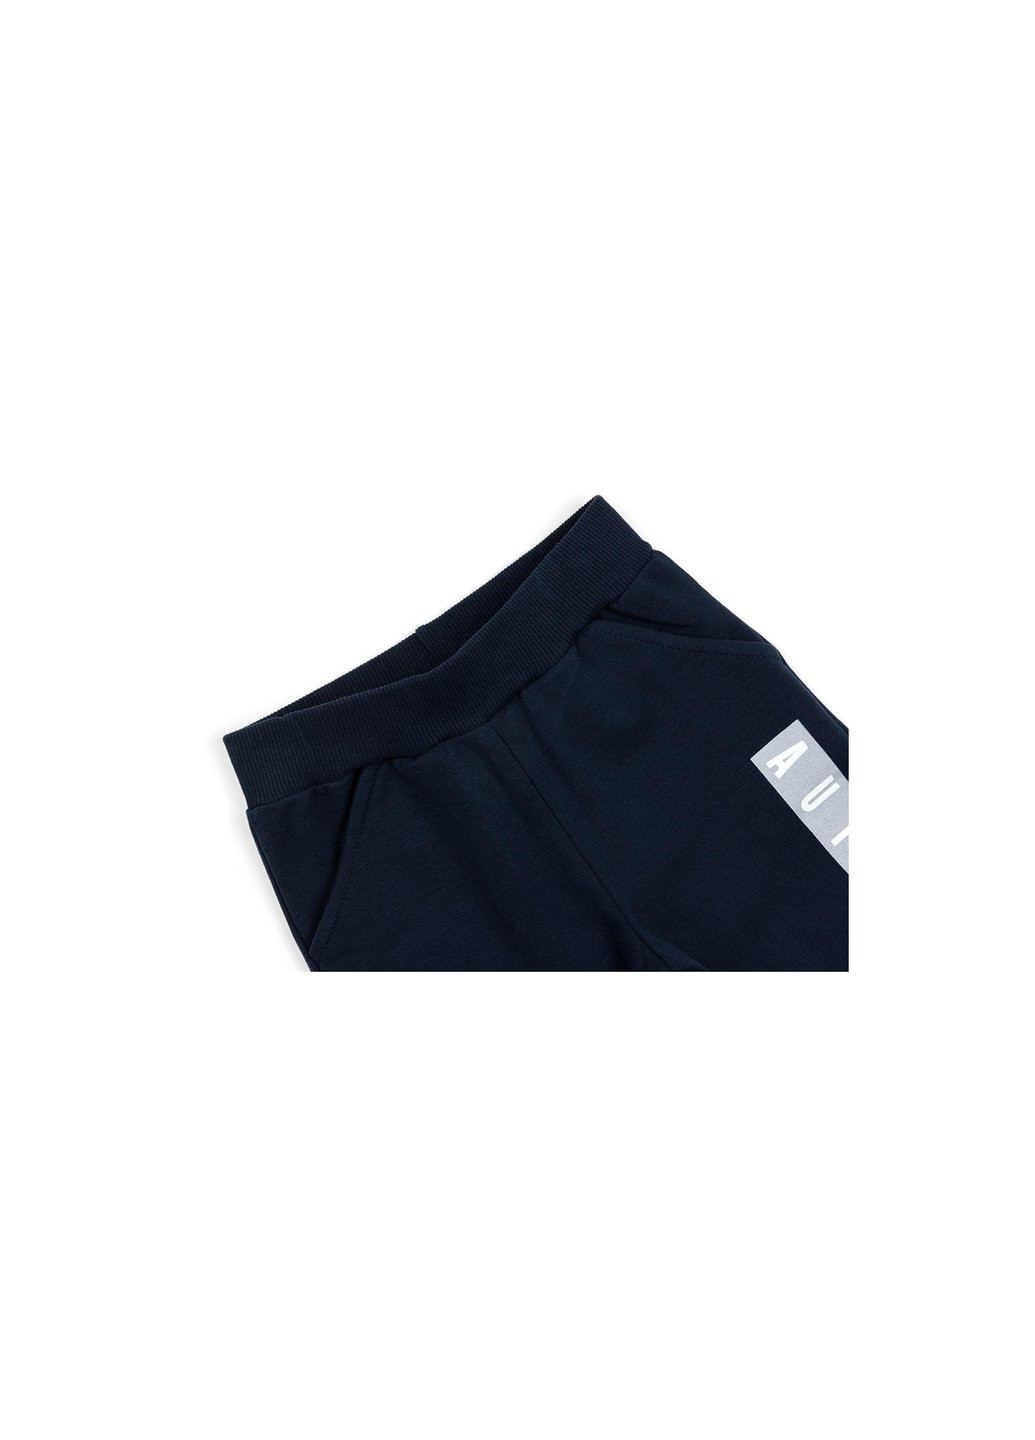 Голубой демисезонный набор детской одежды с карманом (10345-116b-blue) Breeze